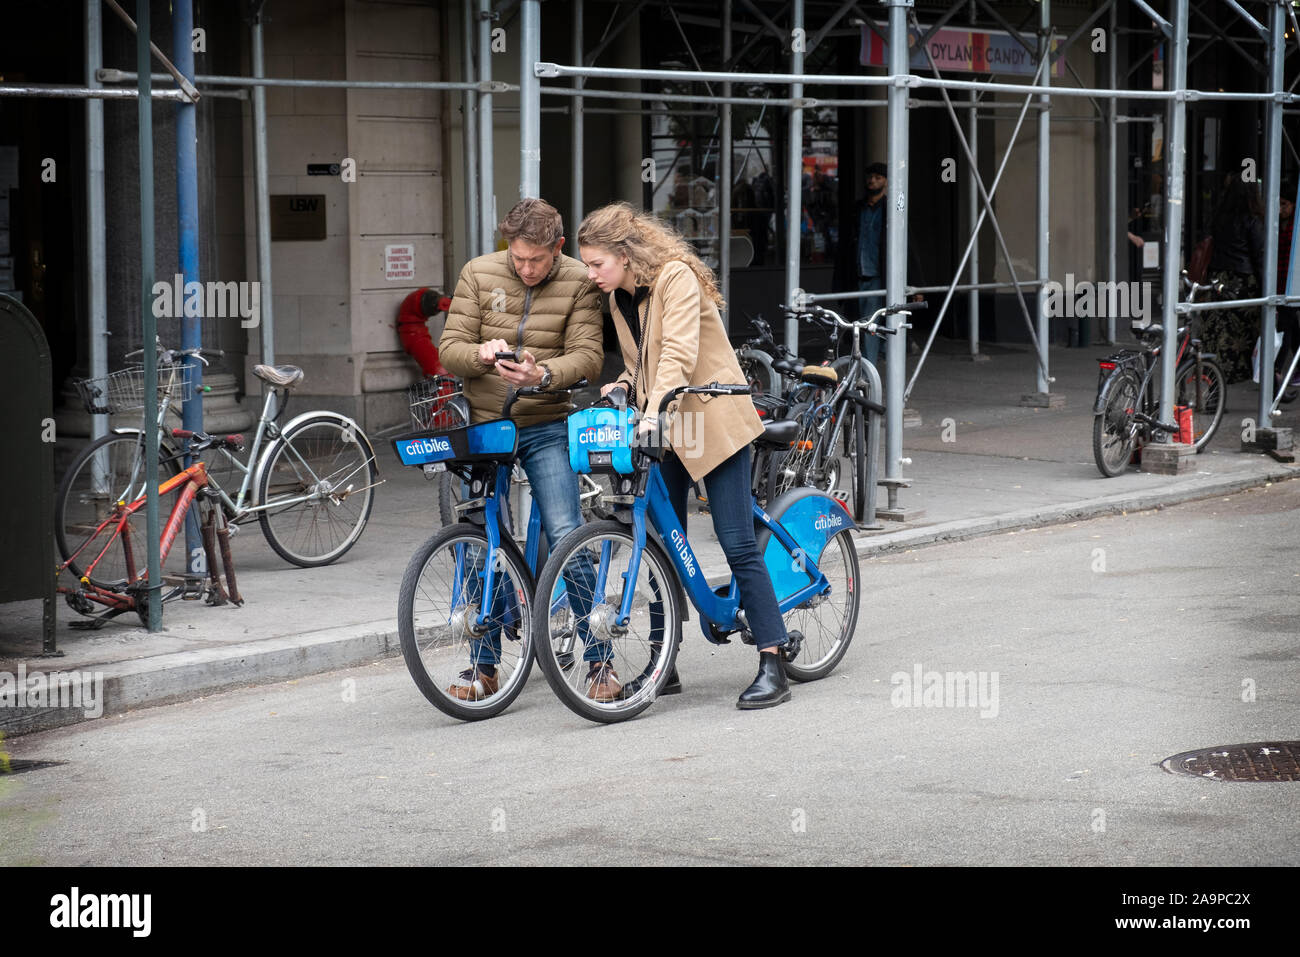 Un couple bien habillé, peut-être les touristes, s'asseoir sur leurs vélos de Citi en regardant un téléphone cellulaire. On Union Square West dans Lower Manhattan, New York Cit. Banque D'Images